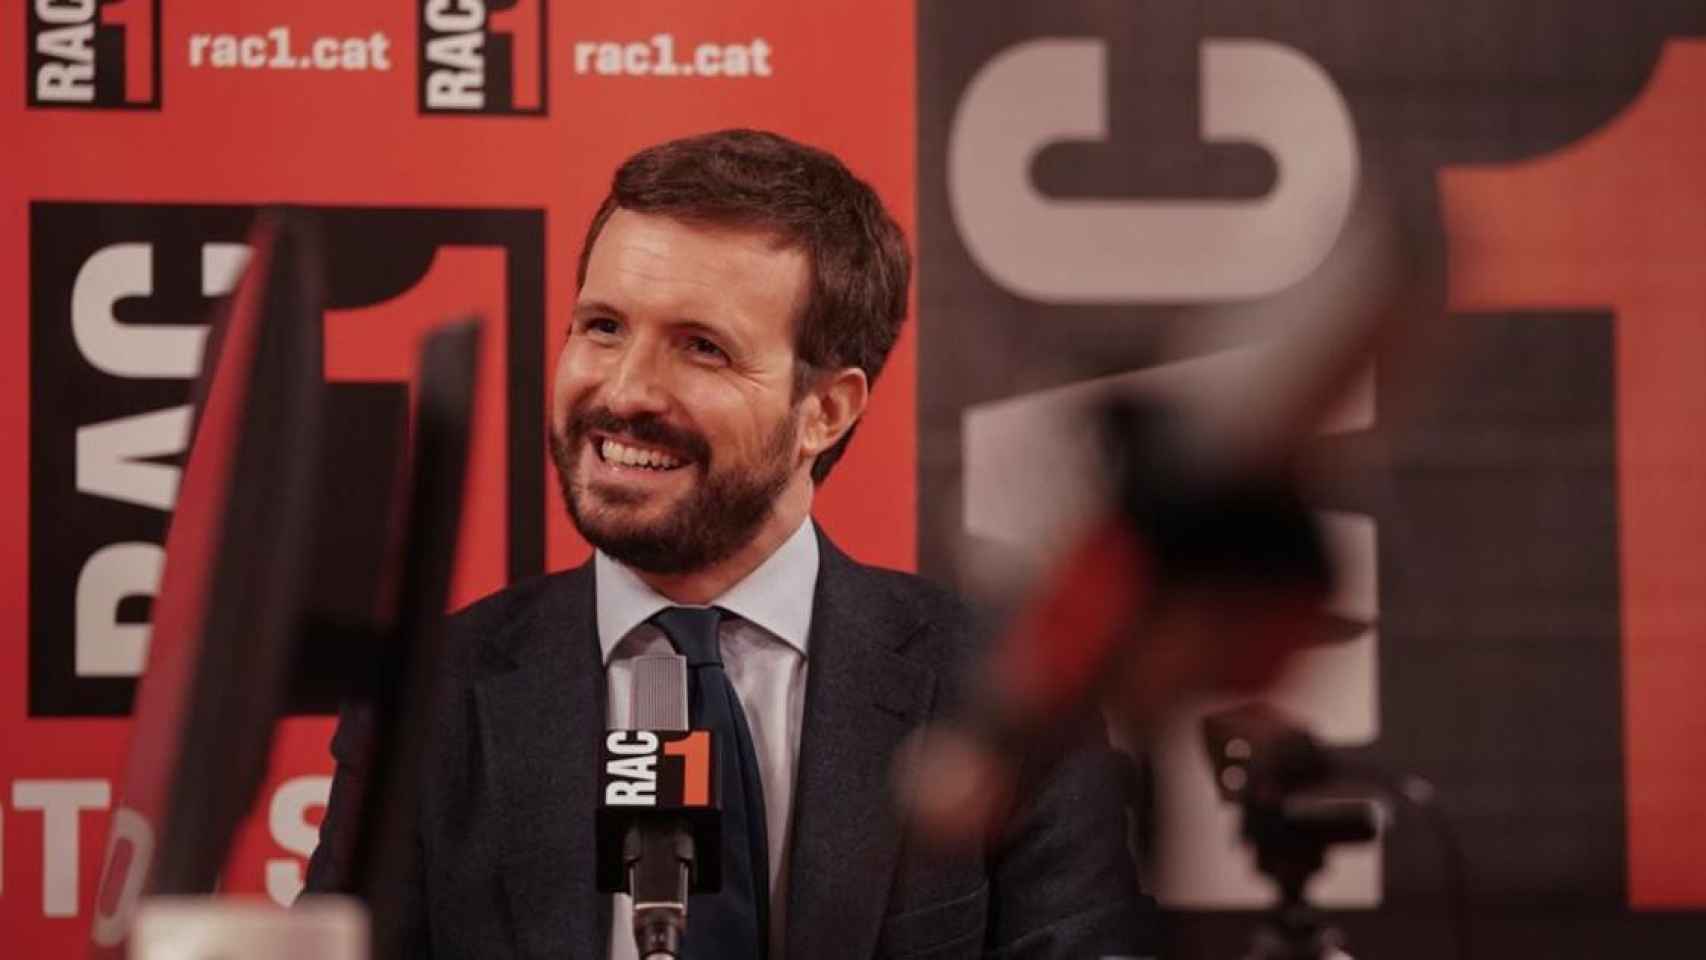 Pablo Casado durante la entrevista de RAC1 el martes pasado / RAC1